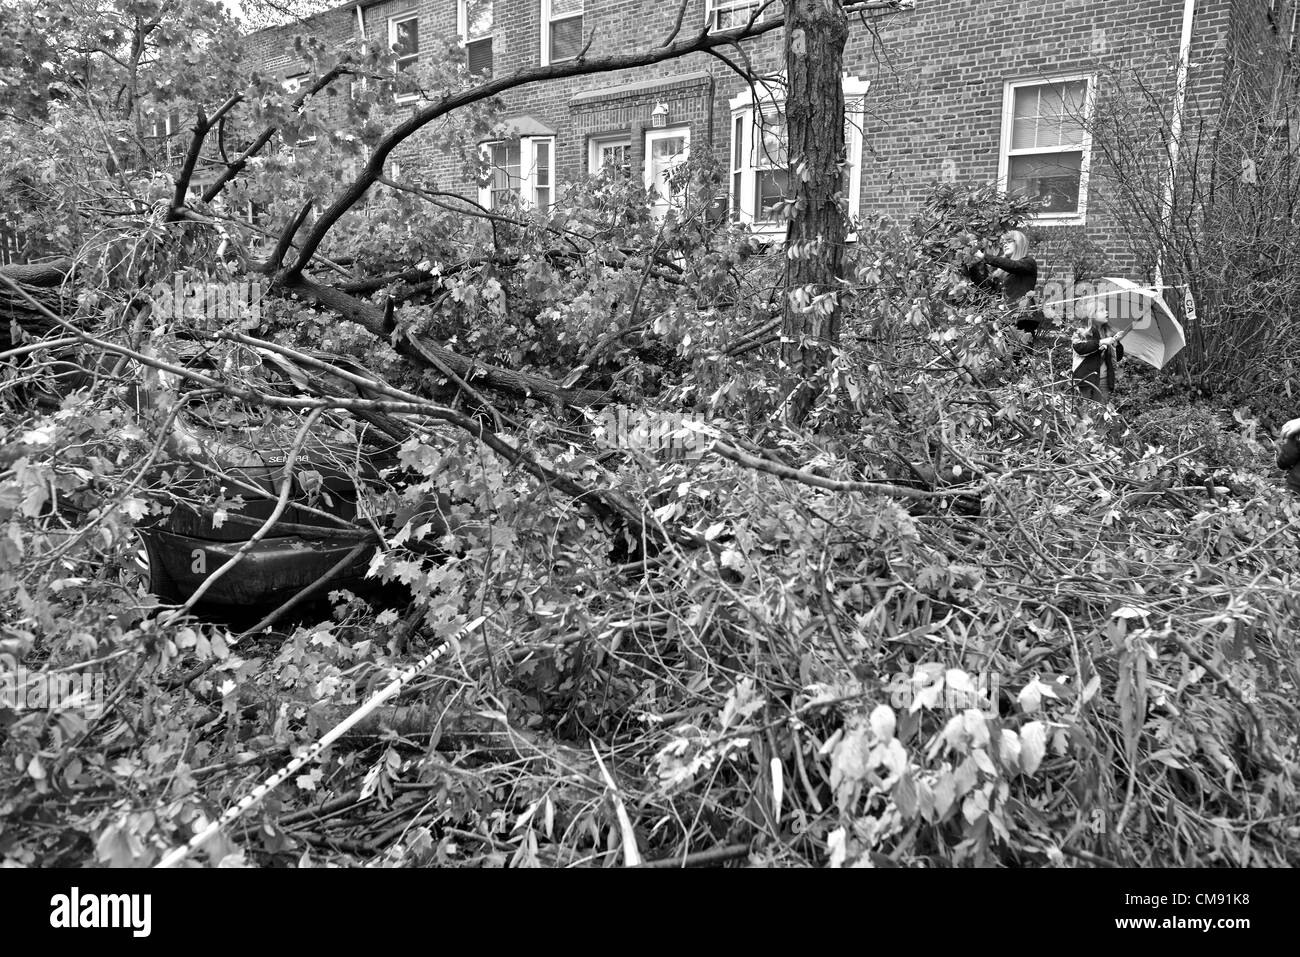 Después de la súper tormenta tropical huracán arenosa, Queens, Nueva York, Estados Unidos - 30 de octubre de 2012 Foto de stock